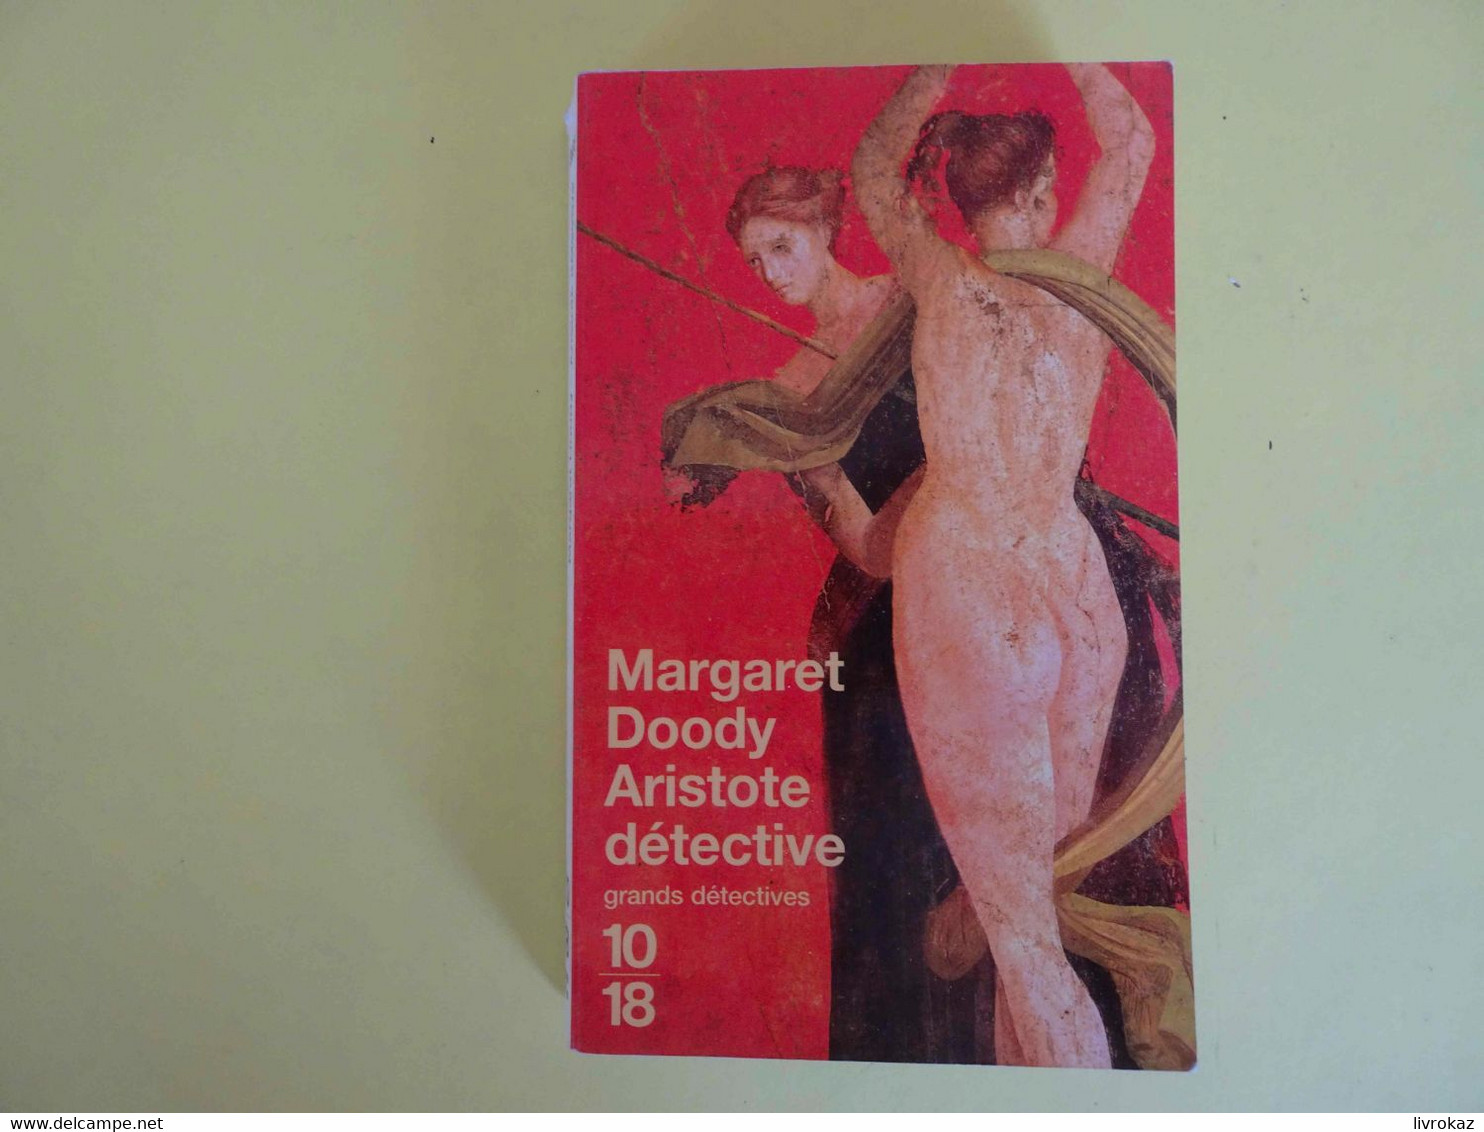 Aristote Détective - Doody Margaret - Editions 10/18 Collection: Grands Détectives Format: Poche ISBN 9782264037282 - 10/18 - Grands Détectives